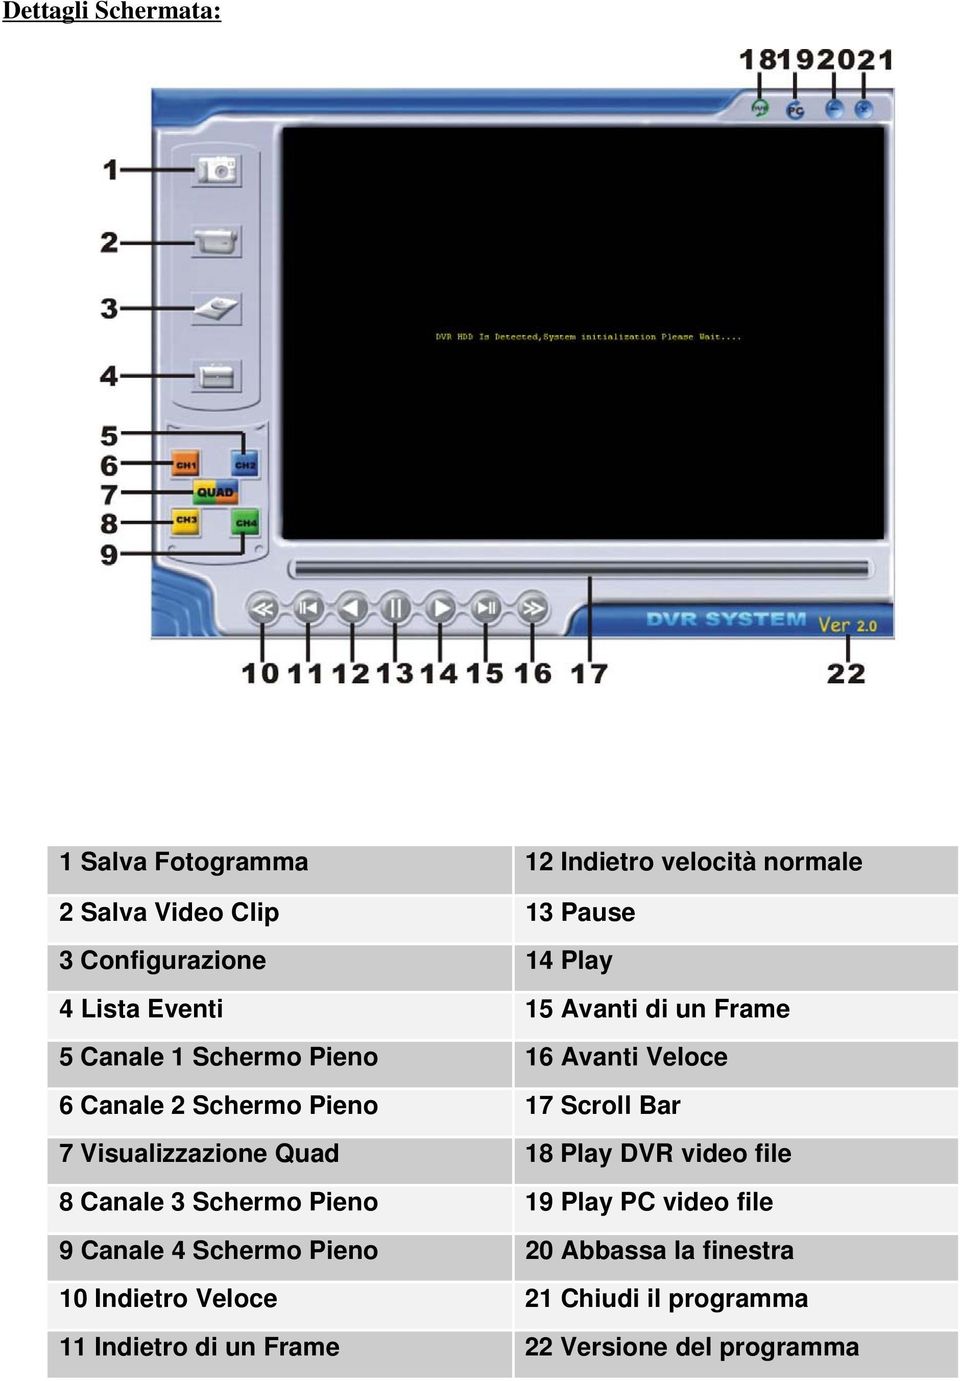 Scroll Bar 7 Visualizzazione Quad 18 Play DVR video file 8 Canale 3 Schermo Pieno 19 Play PC video file 9 Canale 4